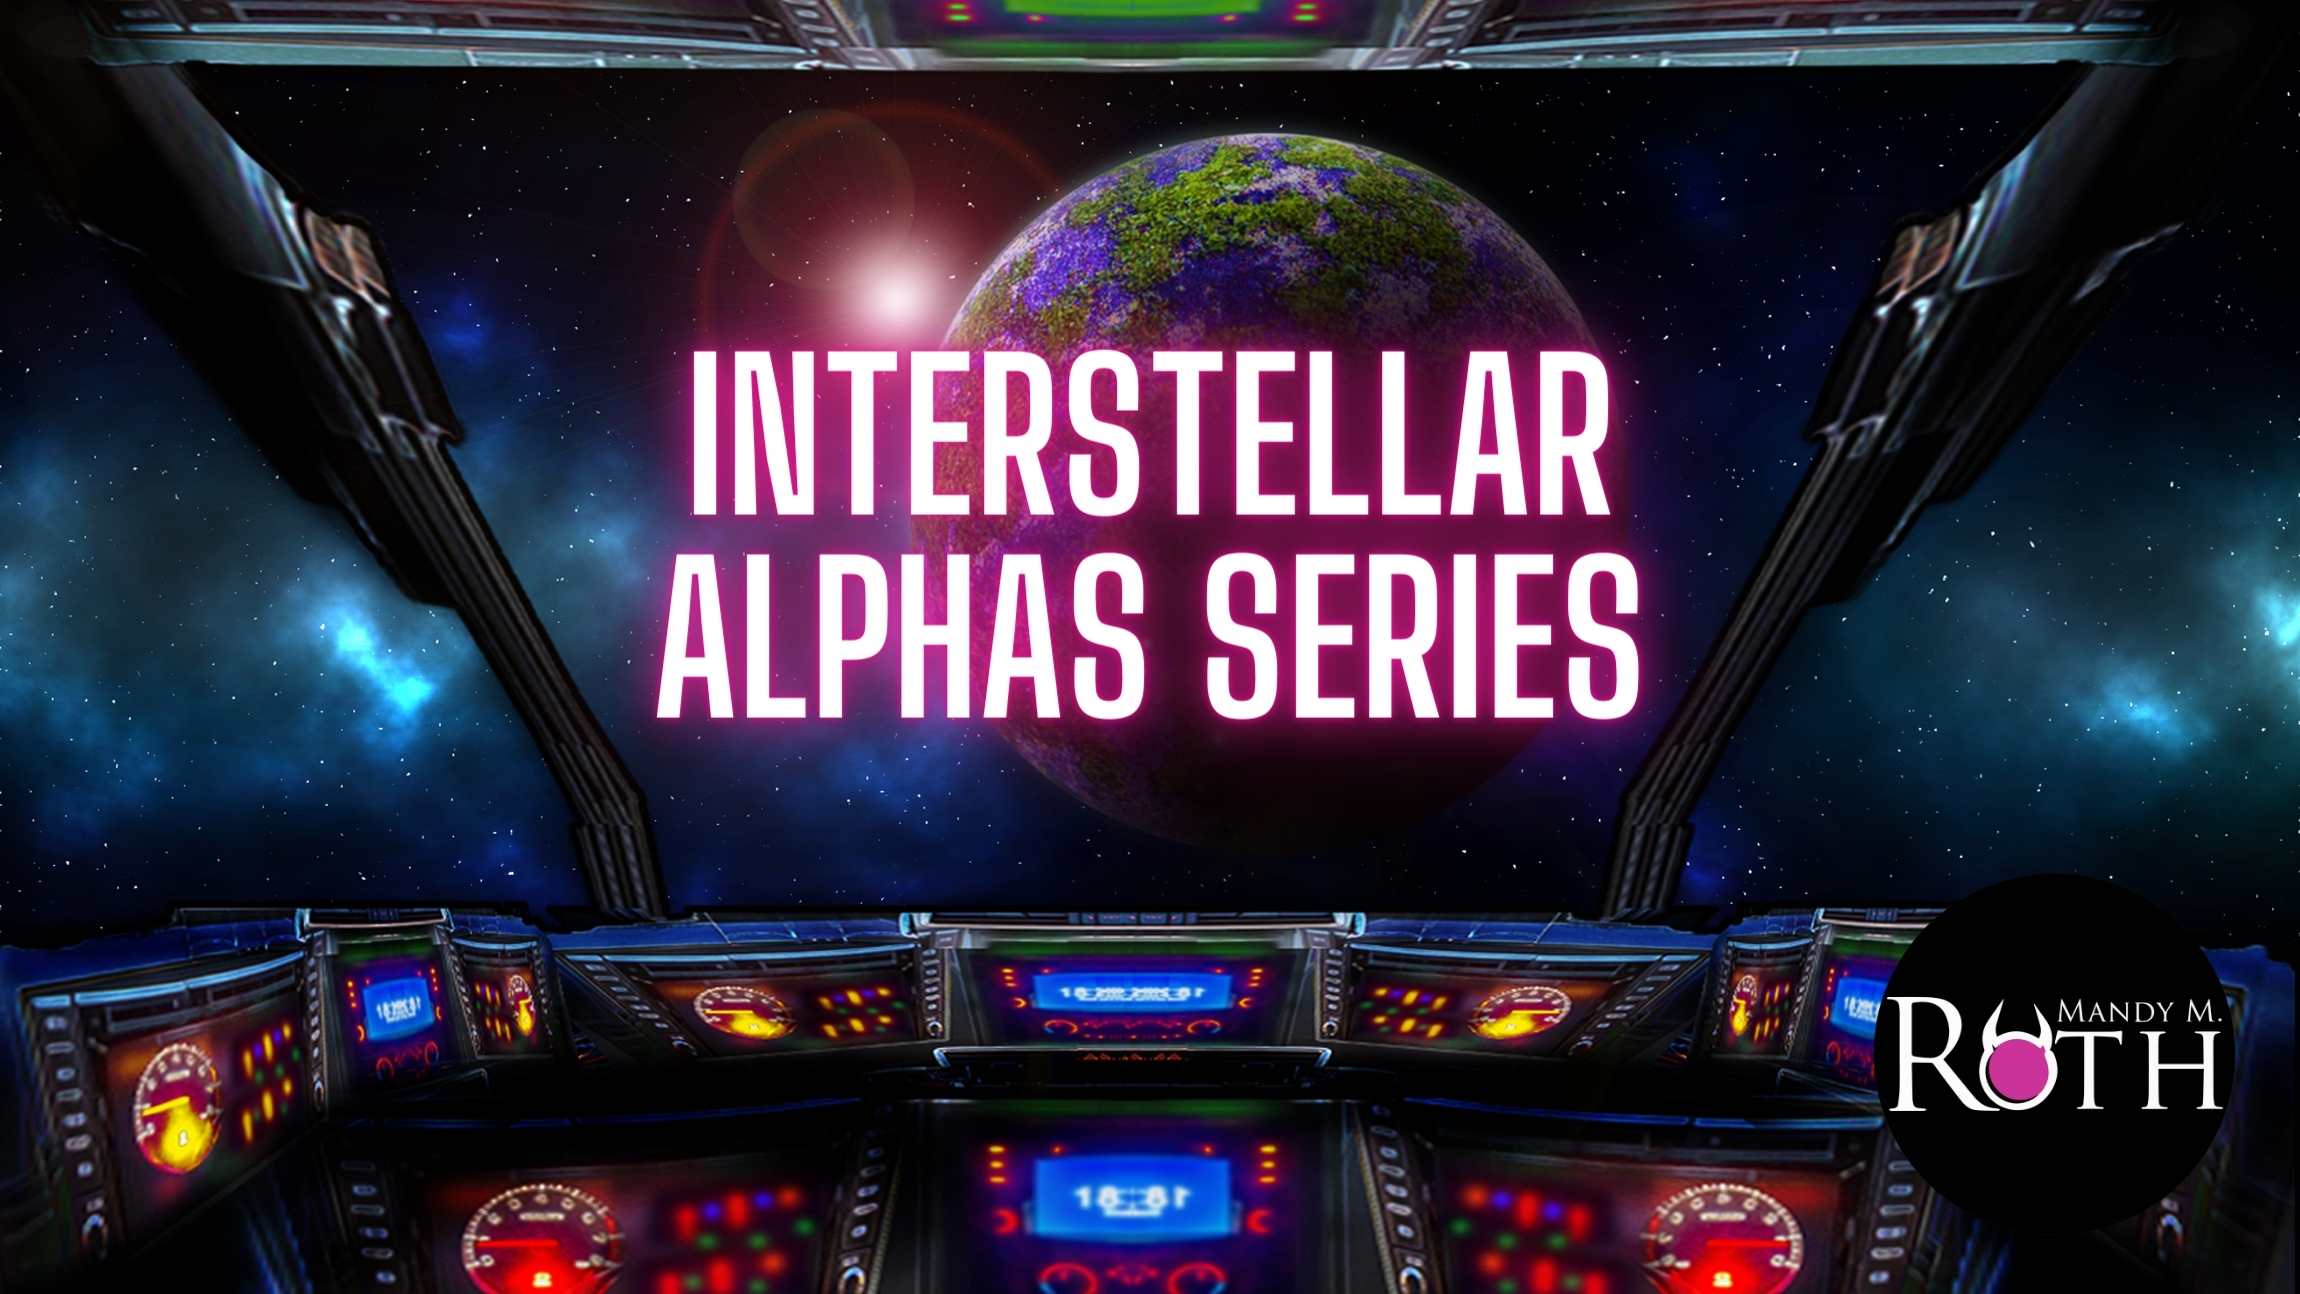 Interstellar Alphas Series